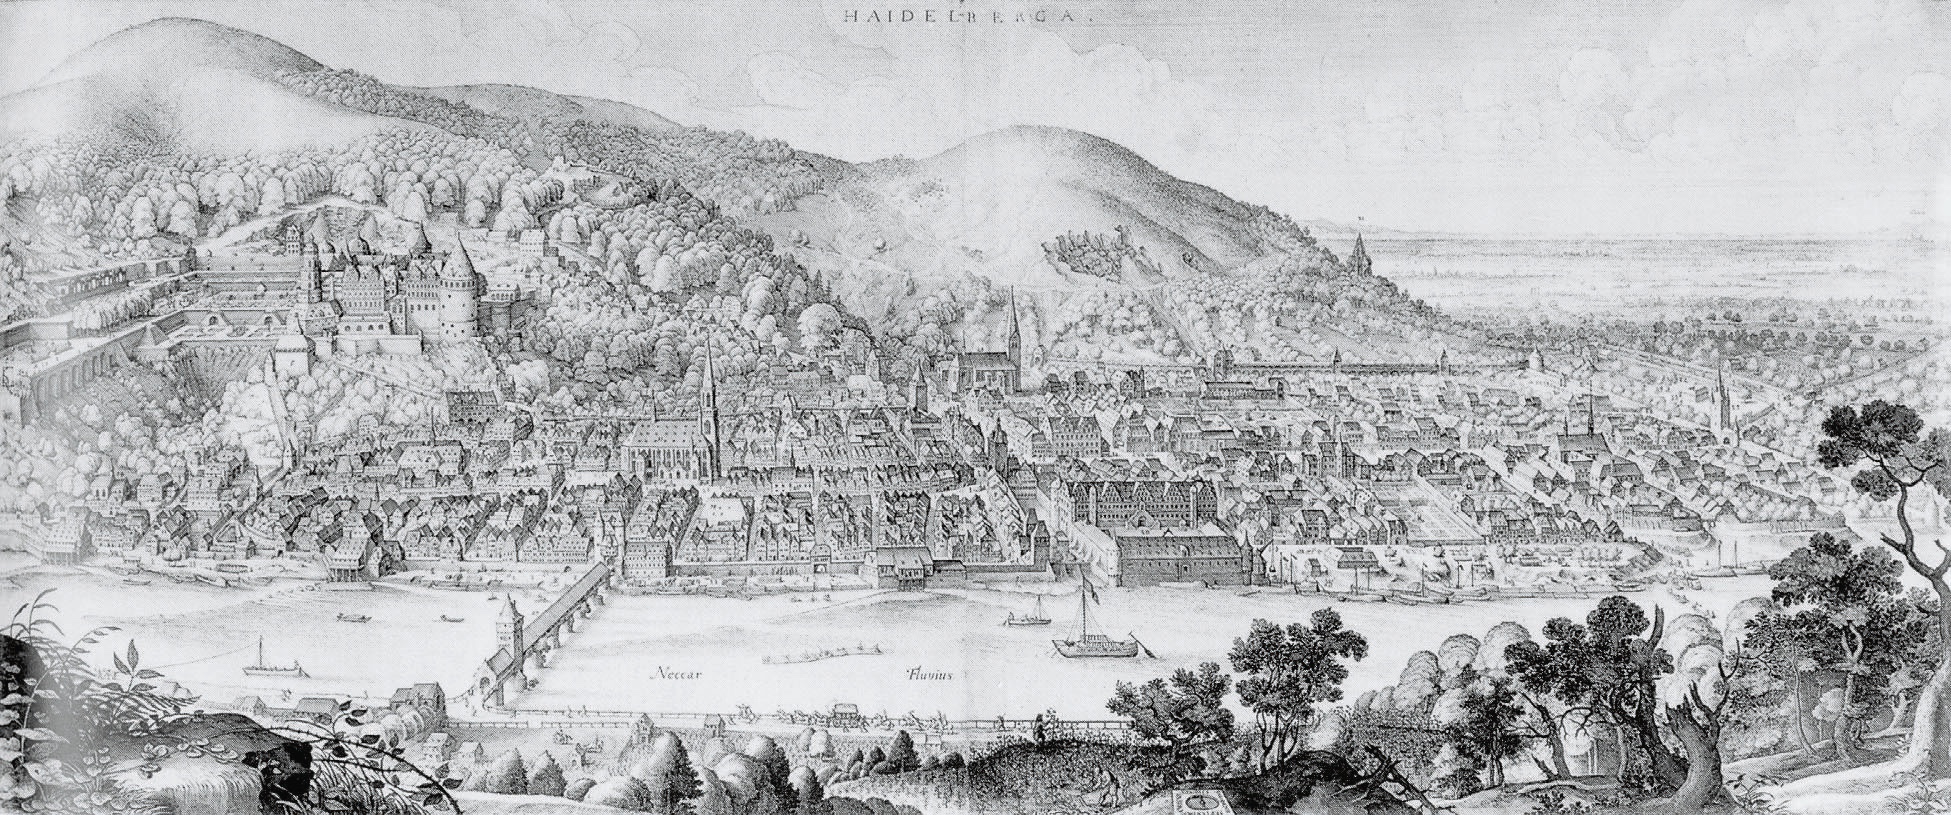 Heidelberg Panorama Matthaeus Merian 1620